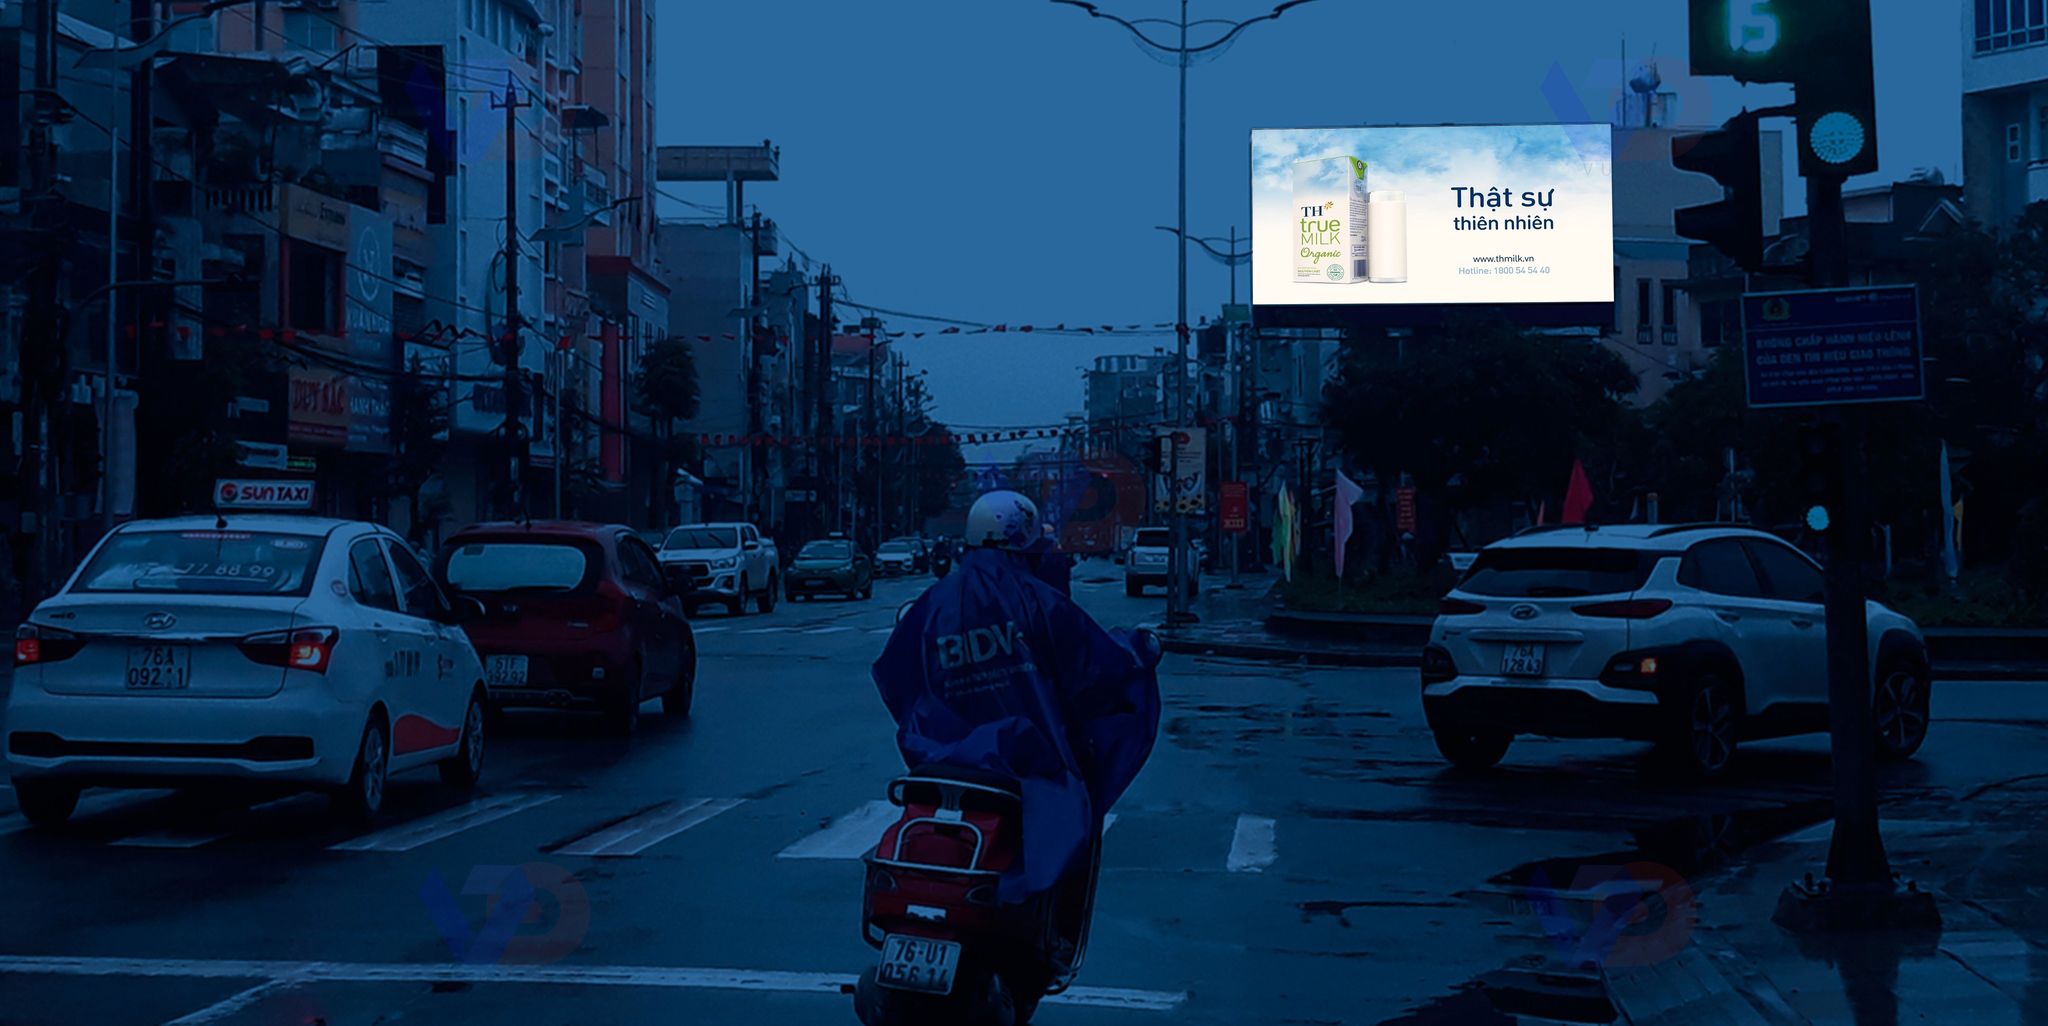 Màn hình LED quảng cáo tại Công viên Bưu Điện, Quảng Ngãi